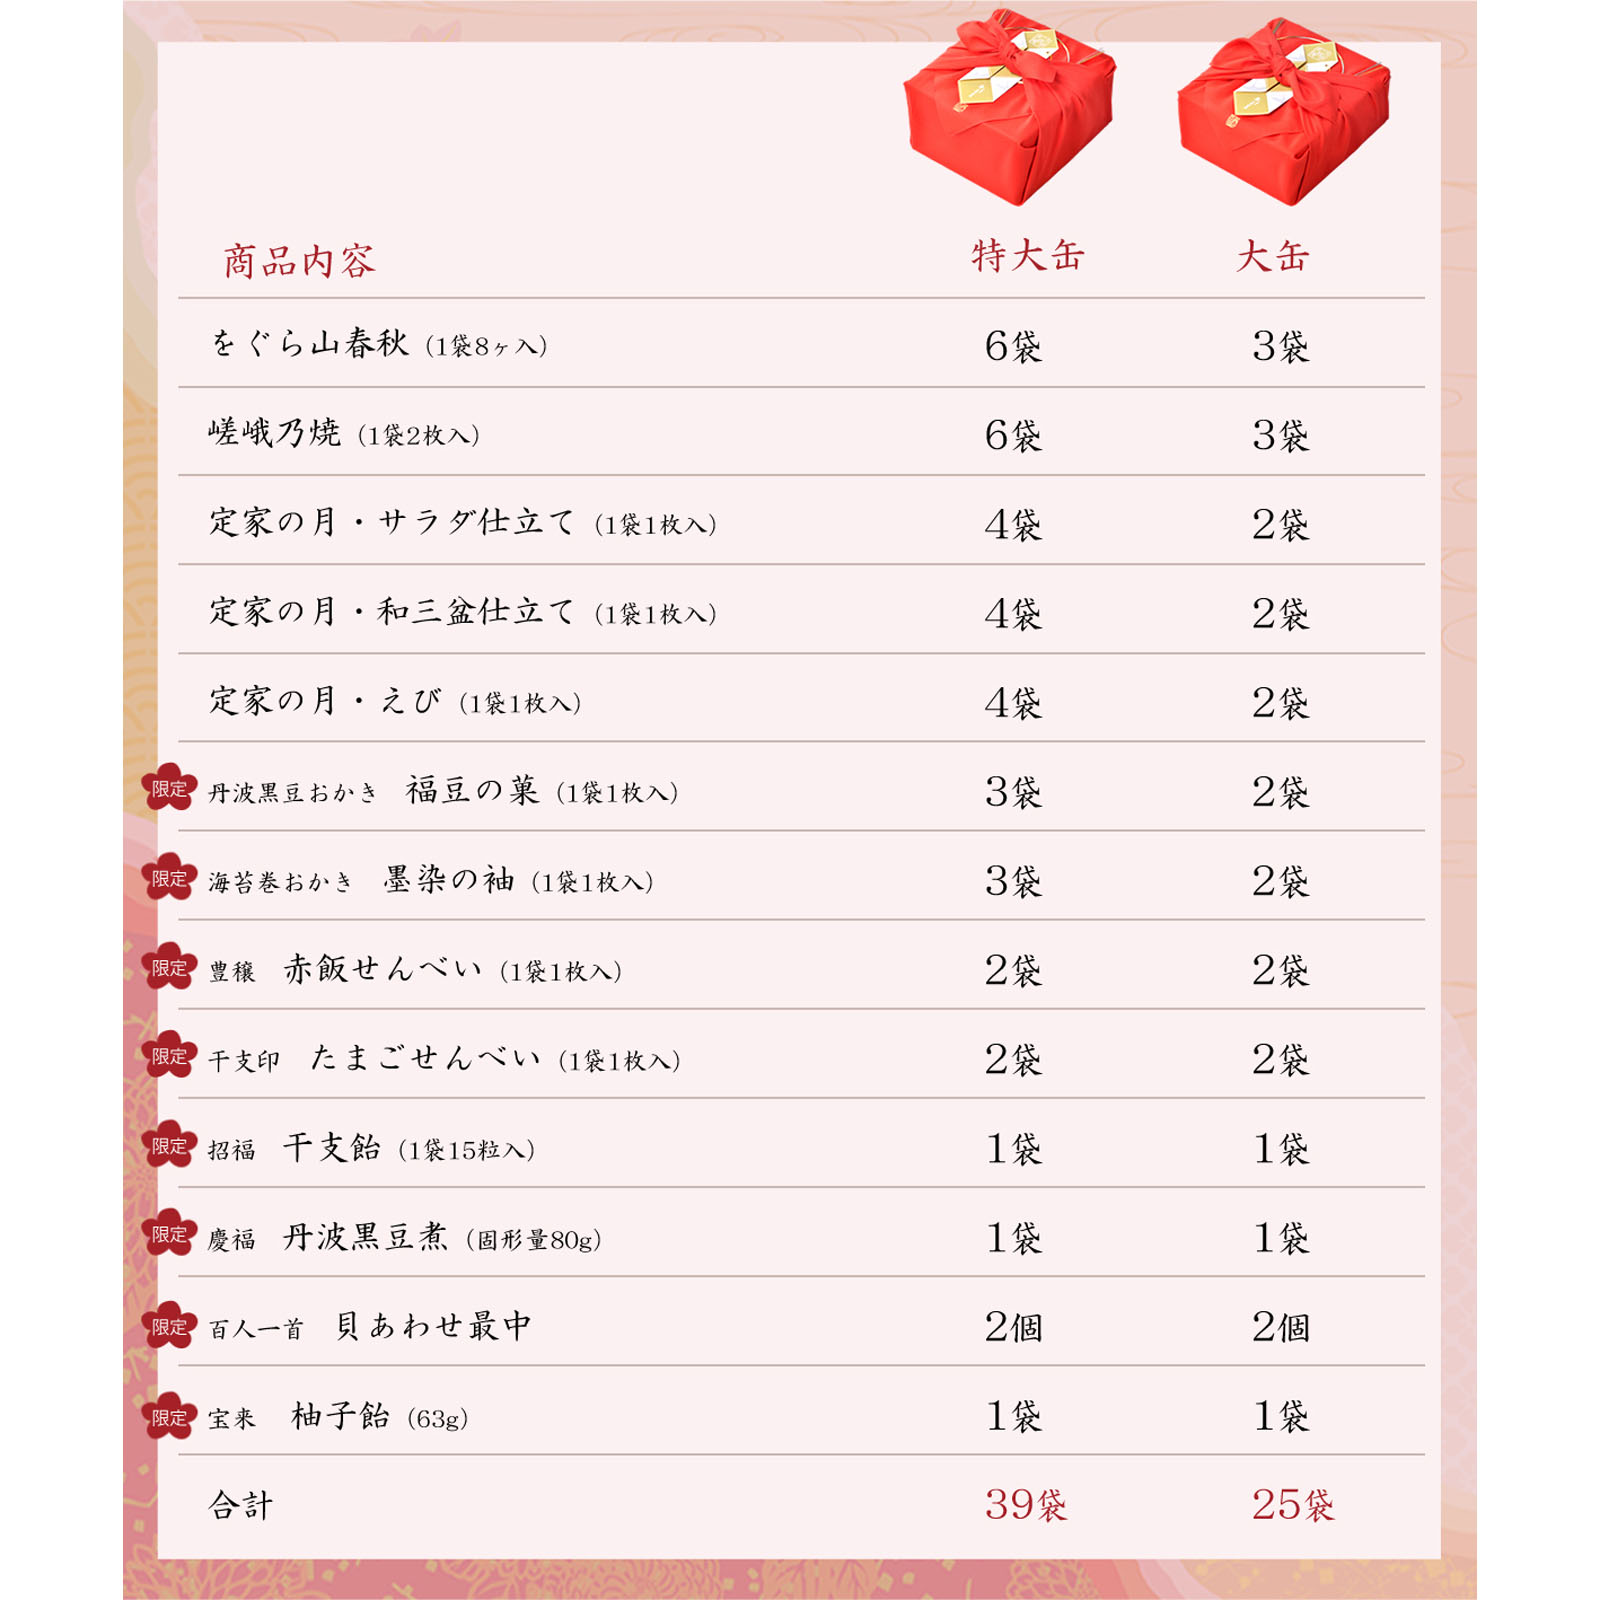 吉祥一陽来復 大缶(13種類(25袋)): 米菓・詰め合わせ京都・老舗の煎餅